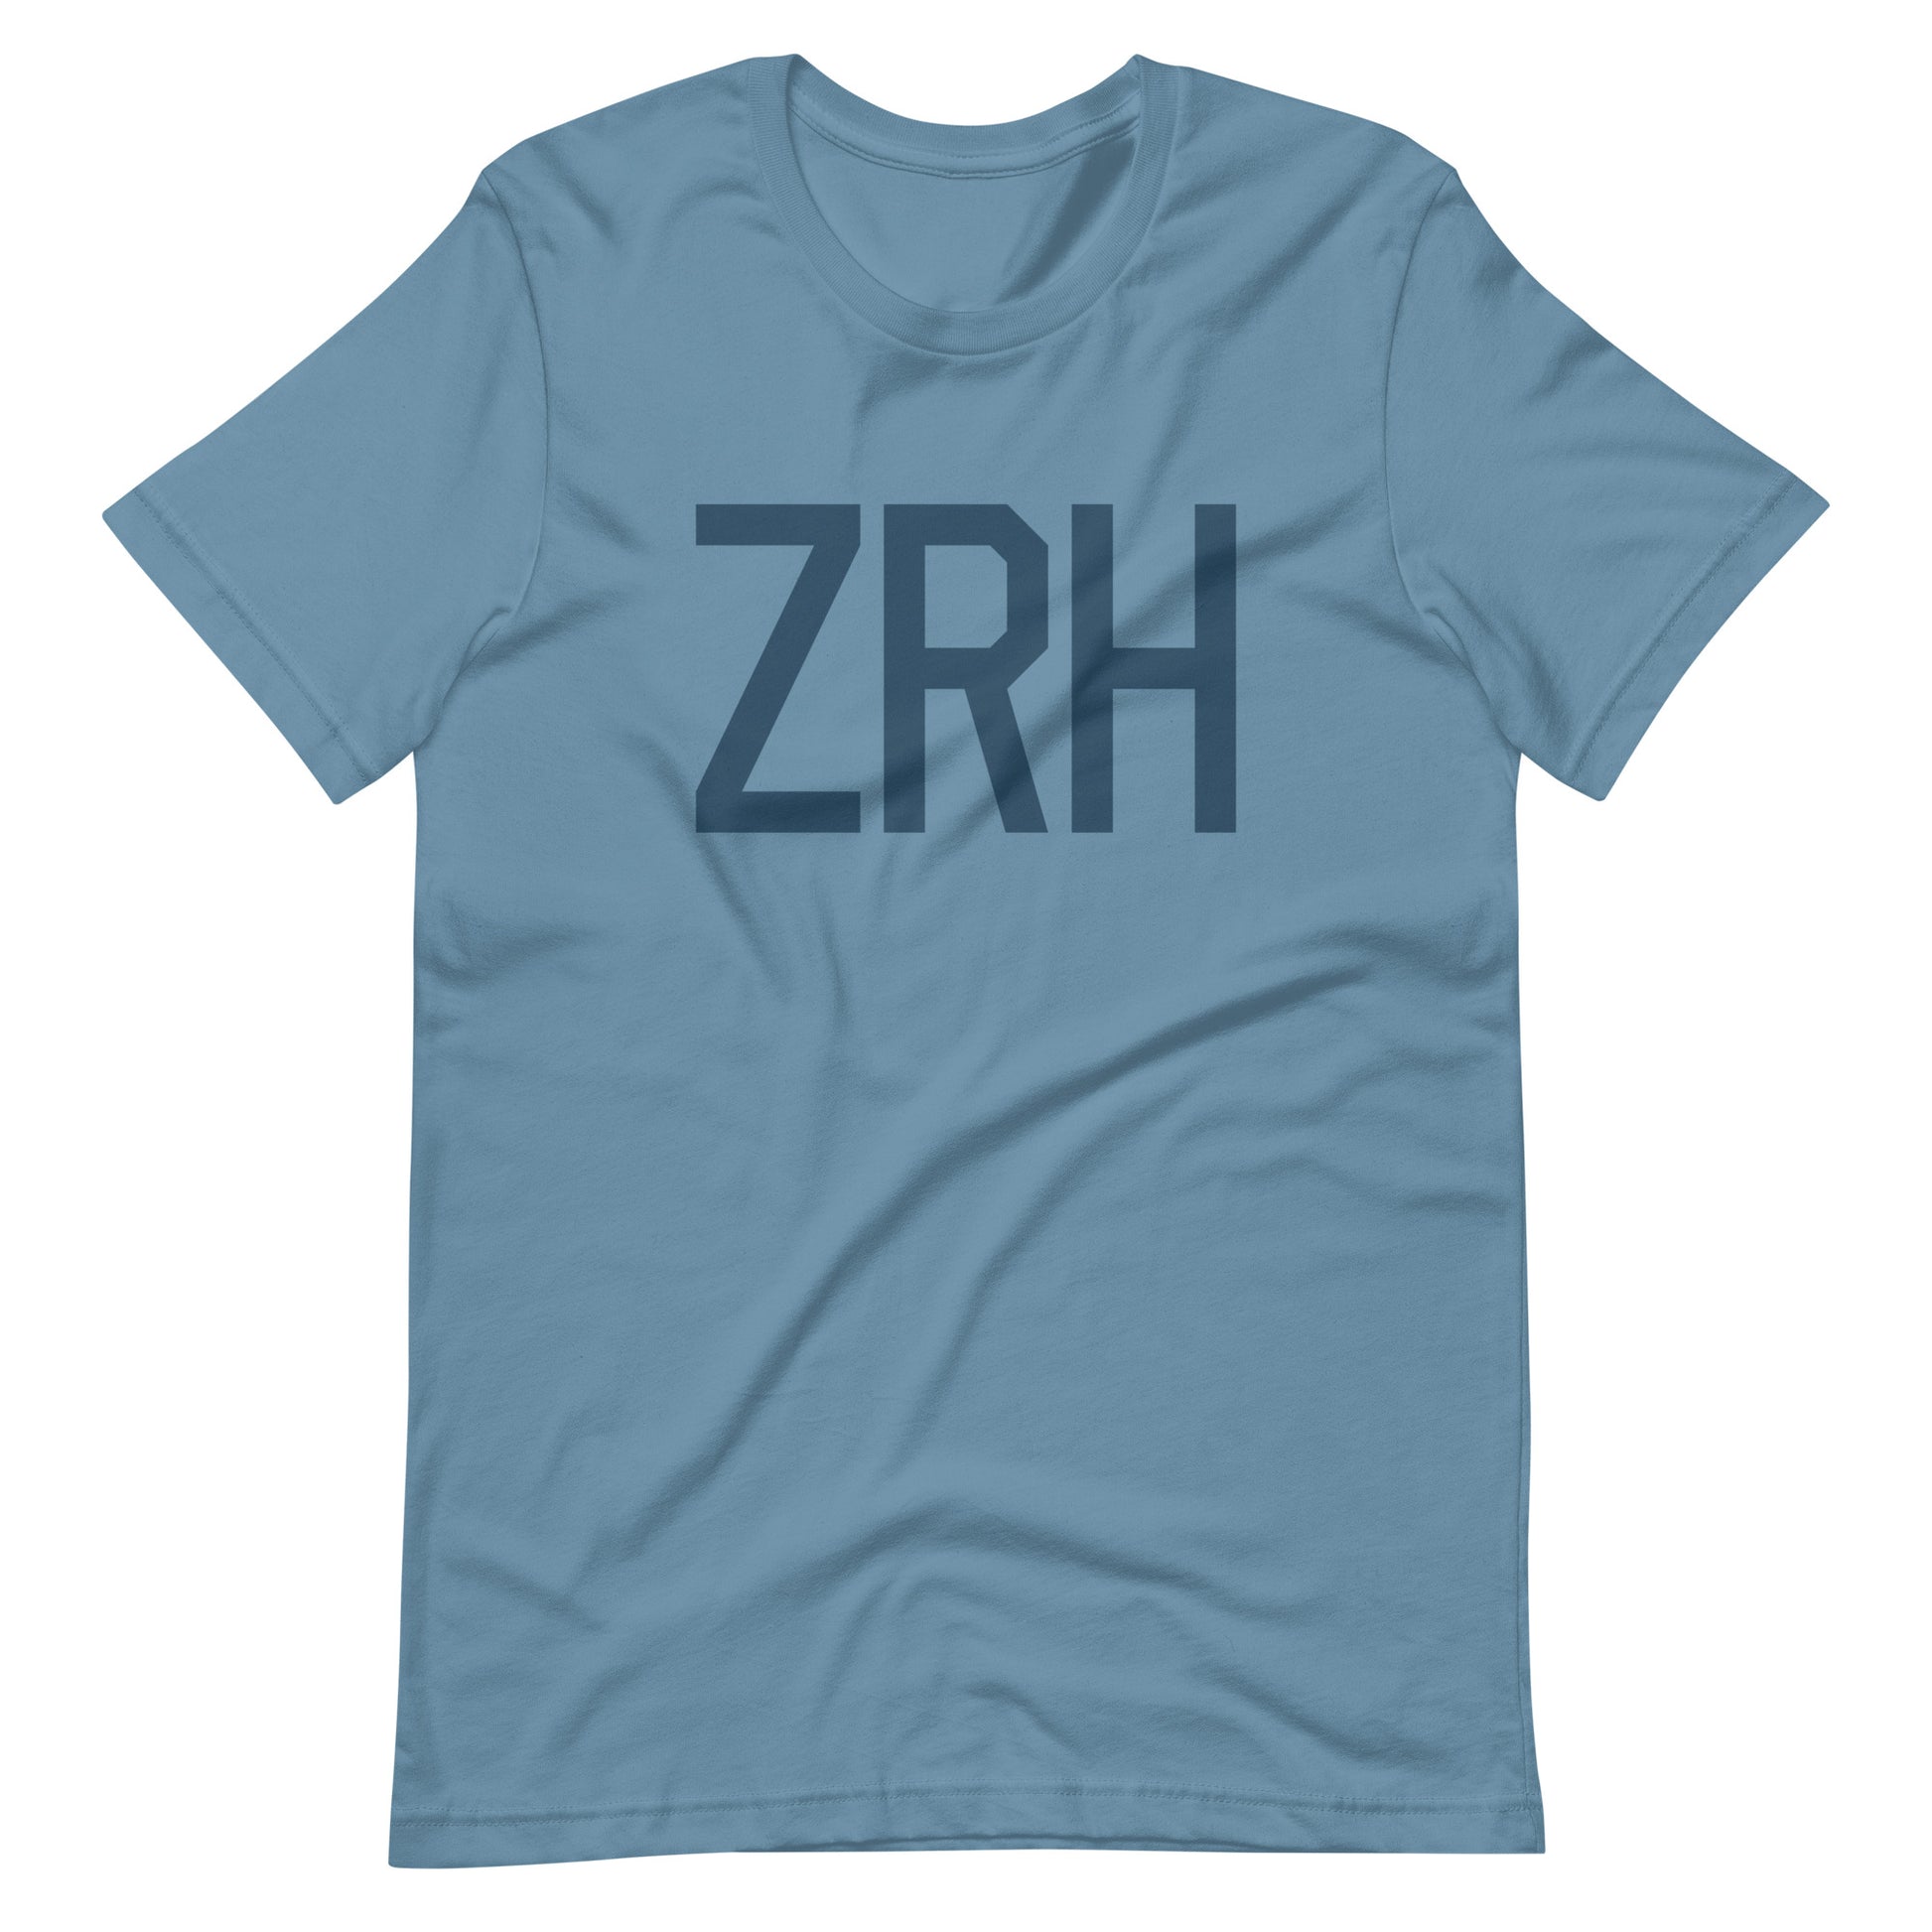 Aviation Lover Unisex T-Shirt - Blue Graphic • ZRH Zurich • YHM Designs - Image 01